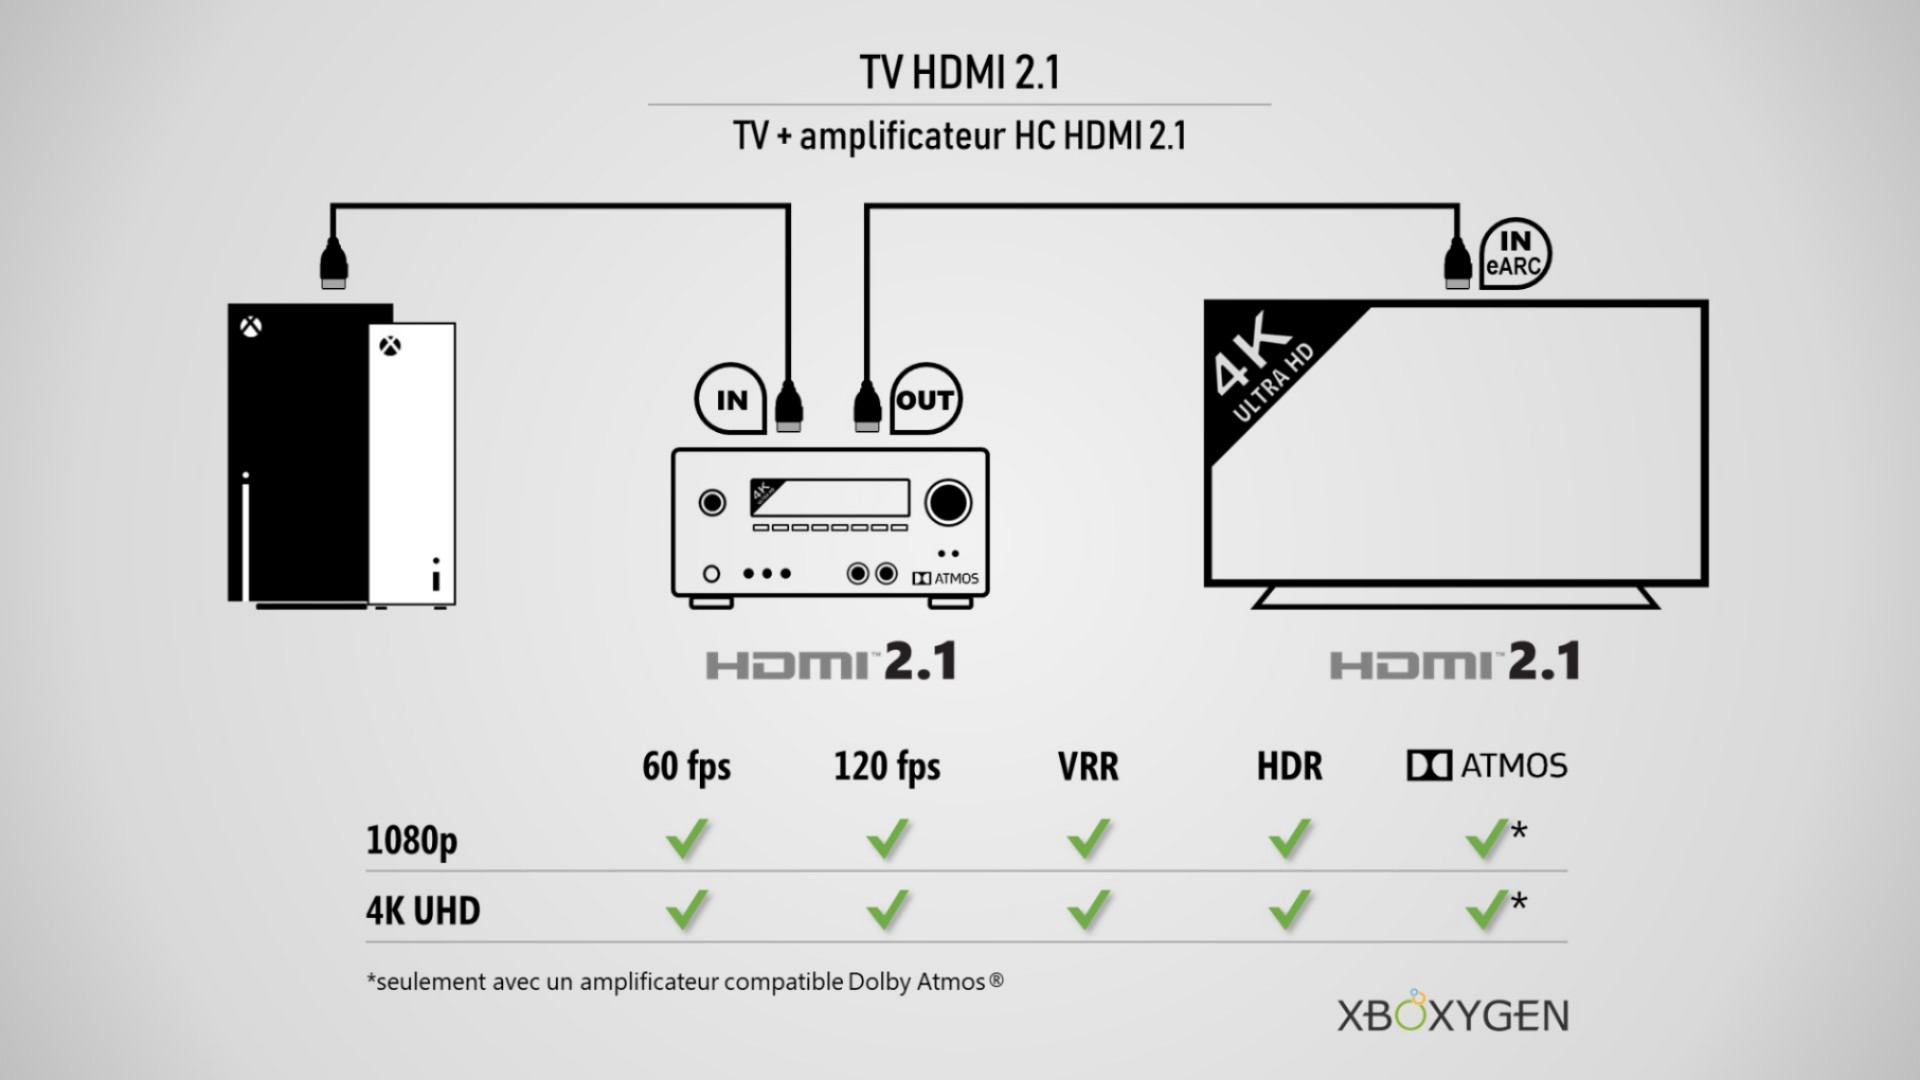 Comment bien brancher sa Xbox Series X|S selon son matériel (TV, ampli,  barre de son) | Xbox One - Xboxygen